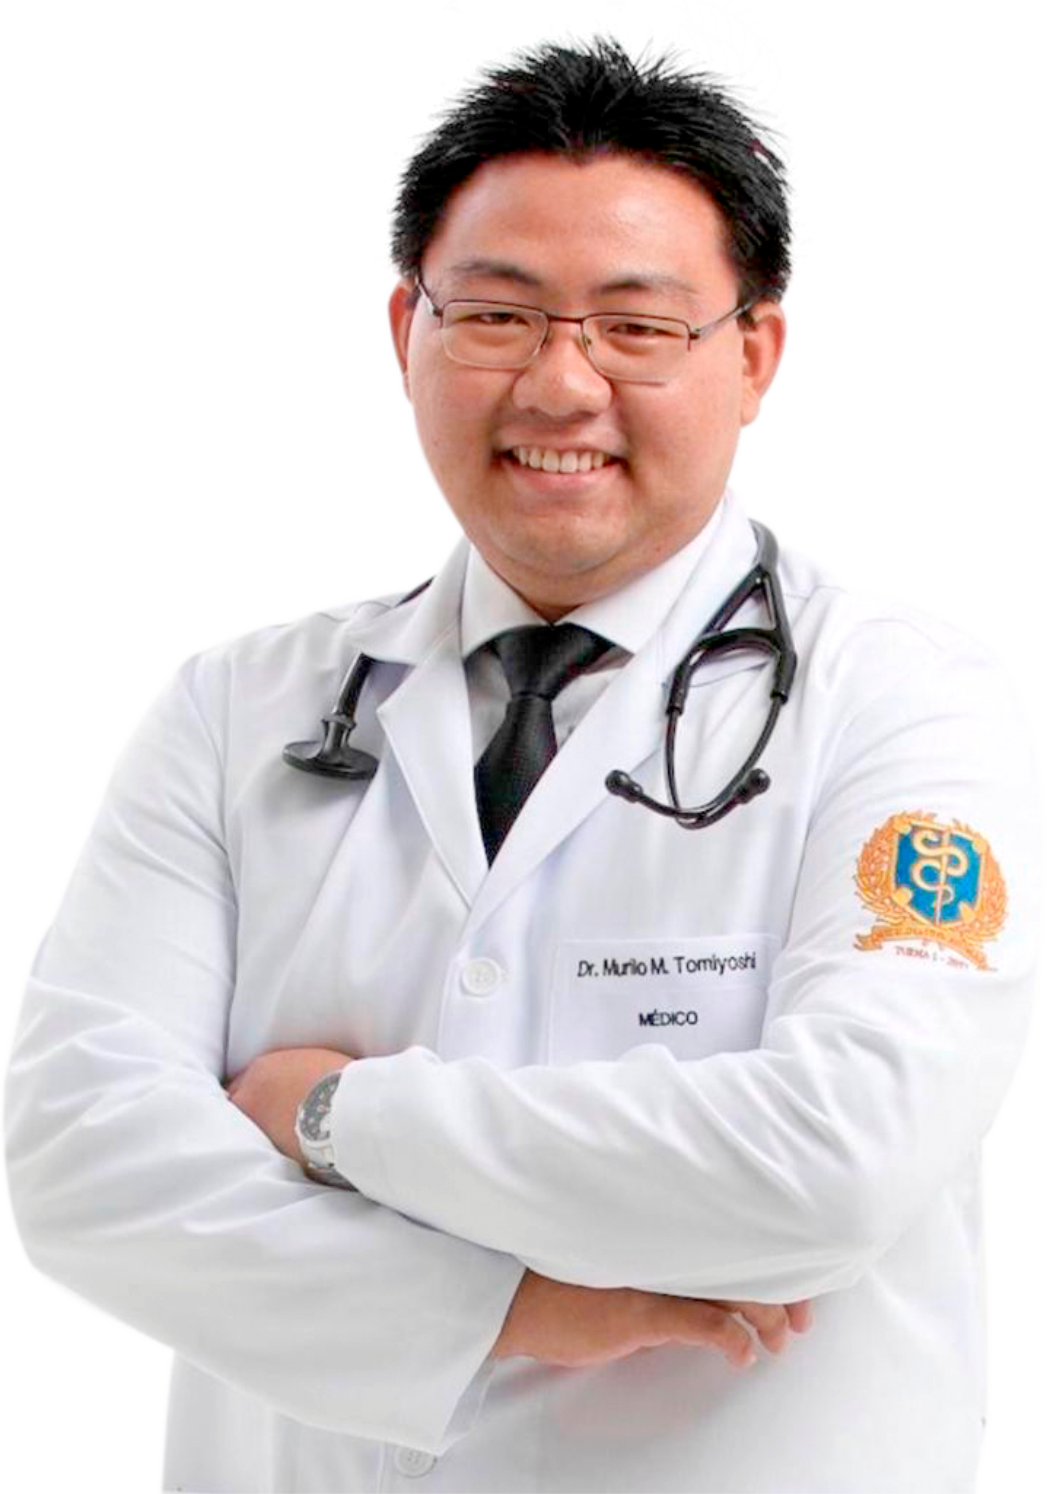 Dr. Murilo Tomiyoshi